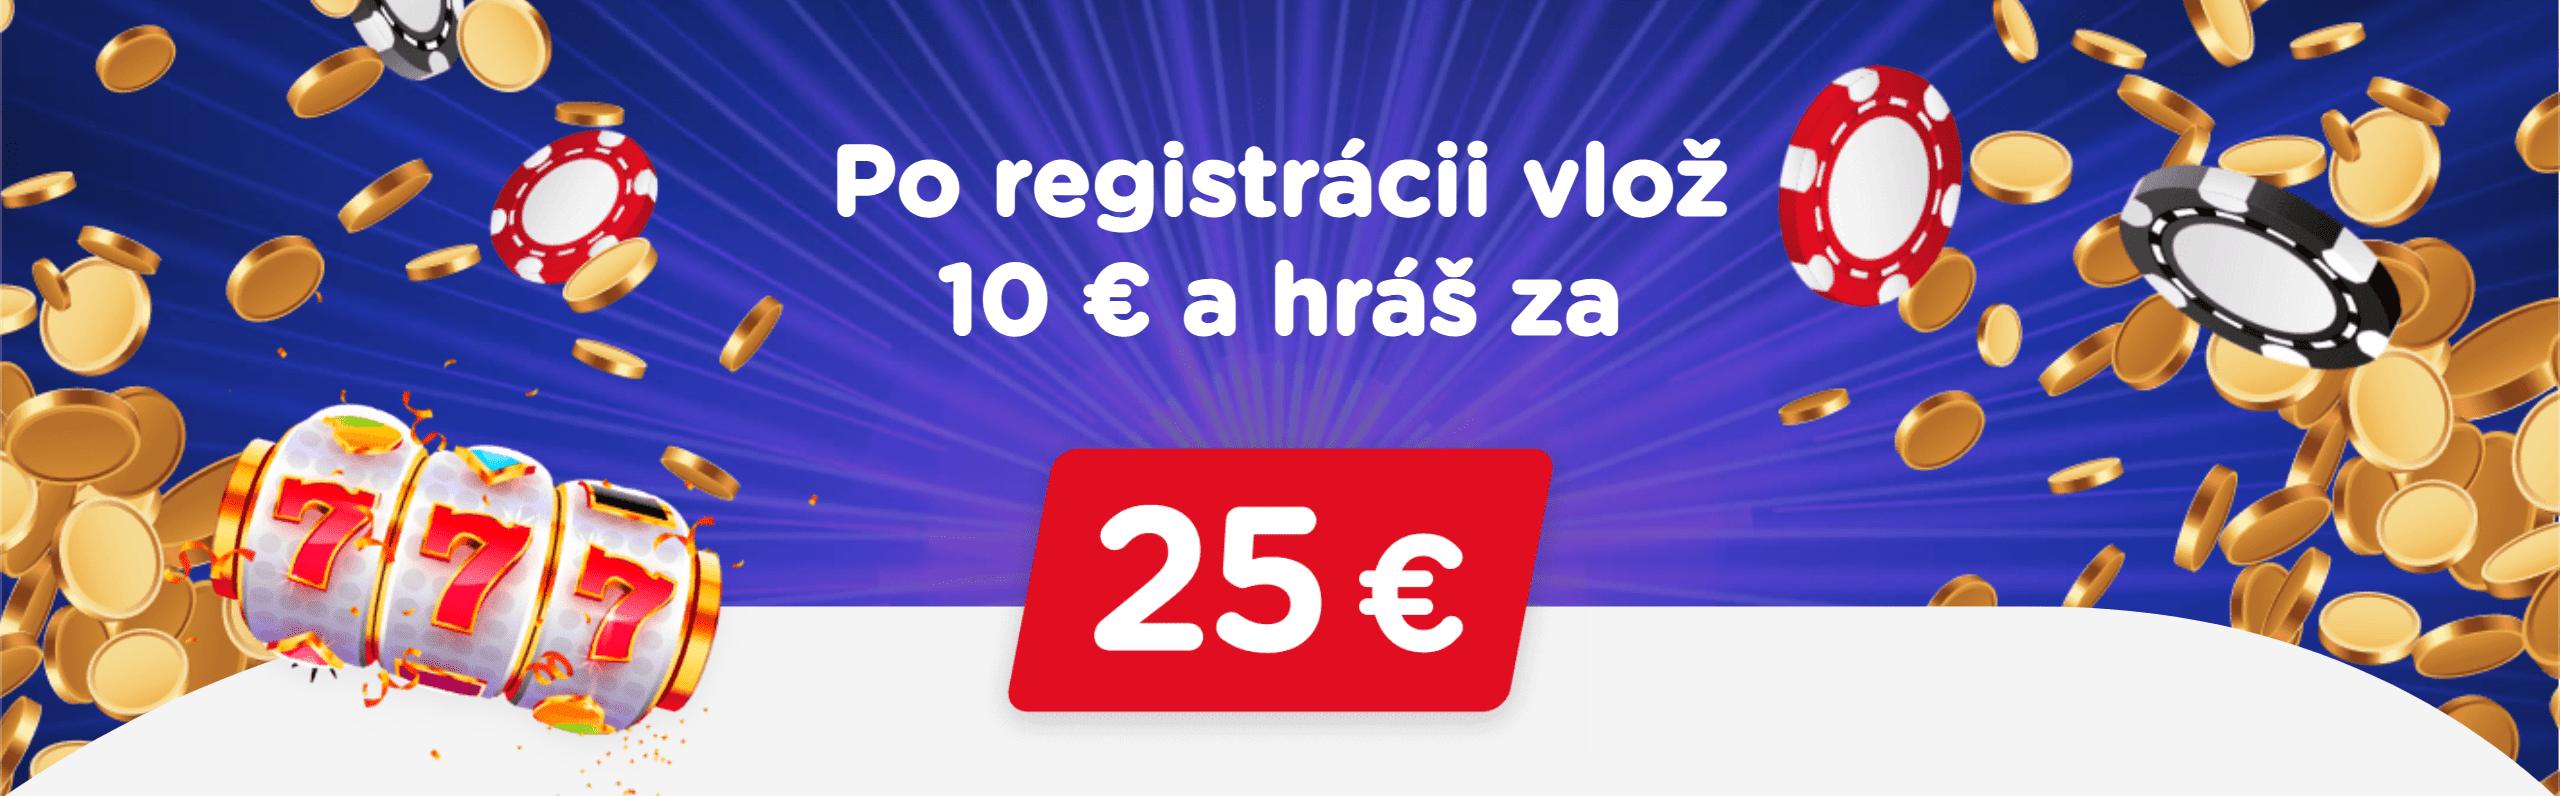 eTIPOS - Po registrácii vlož 10 Eur a hraj za 25 Eur - banner